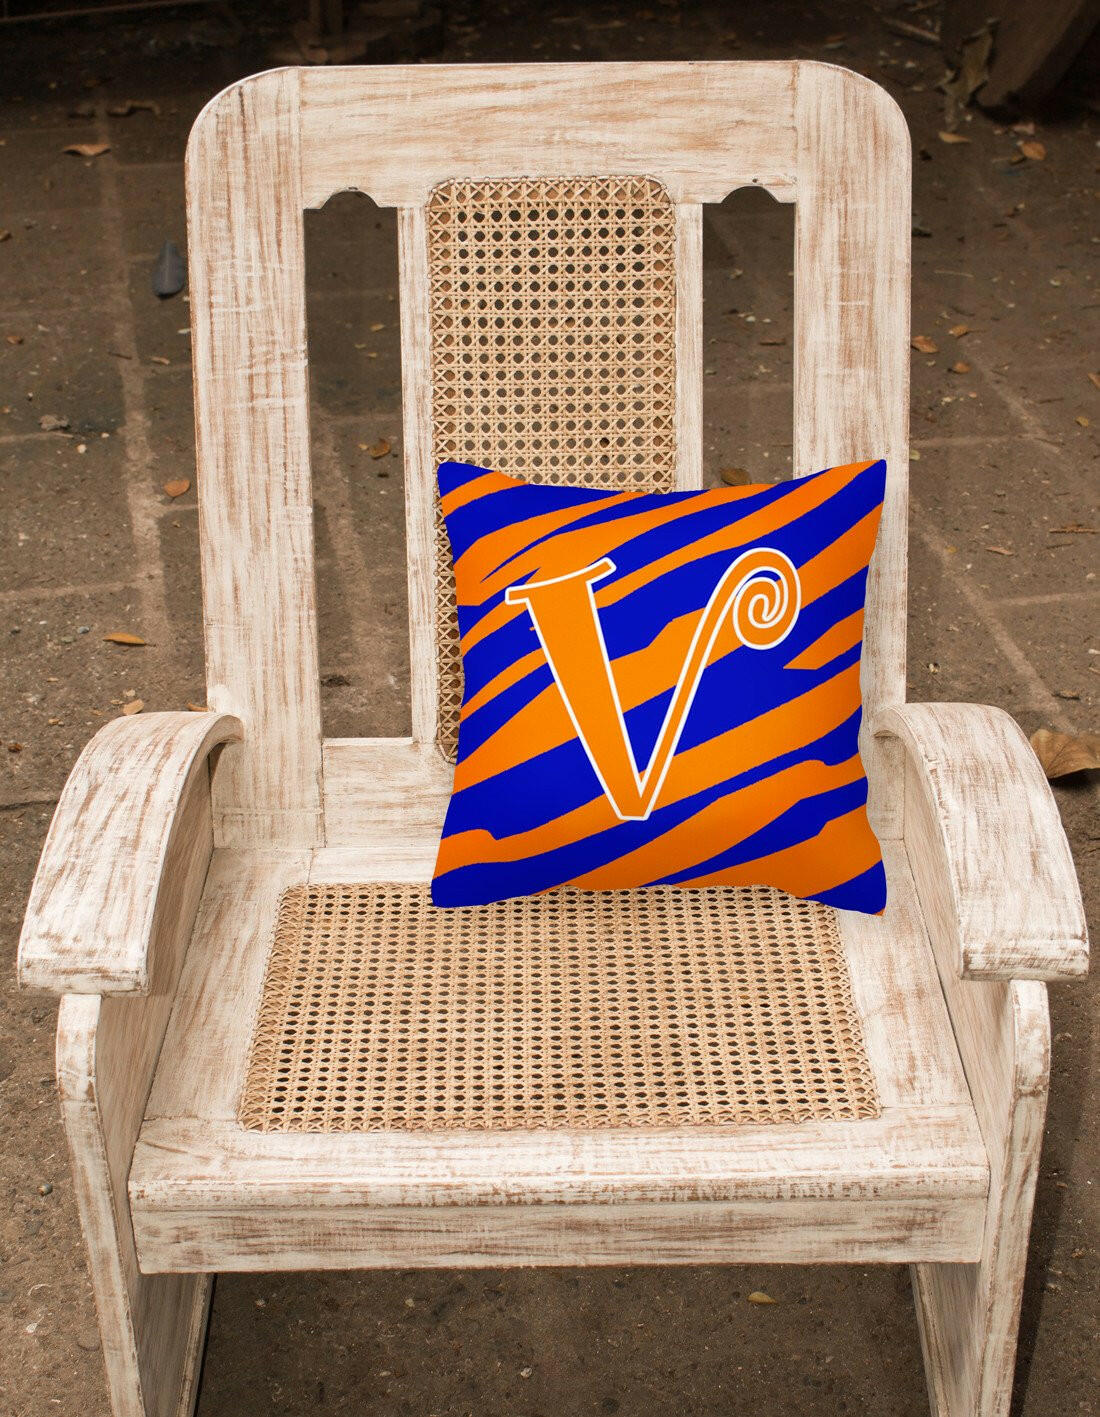 Monogram Initial V Tiger Stripe Blue and Orange Decorative Canvas Fabric Pillow - the-store.com